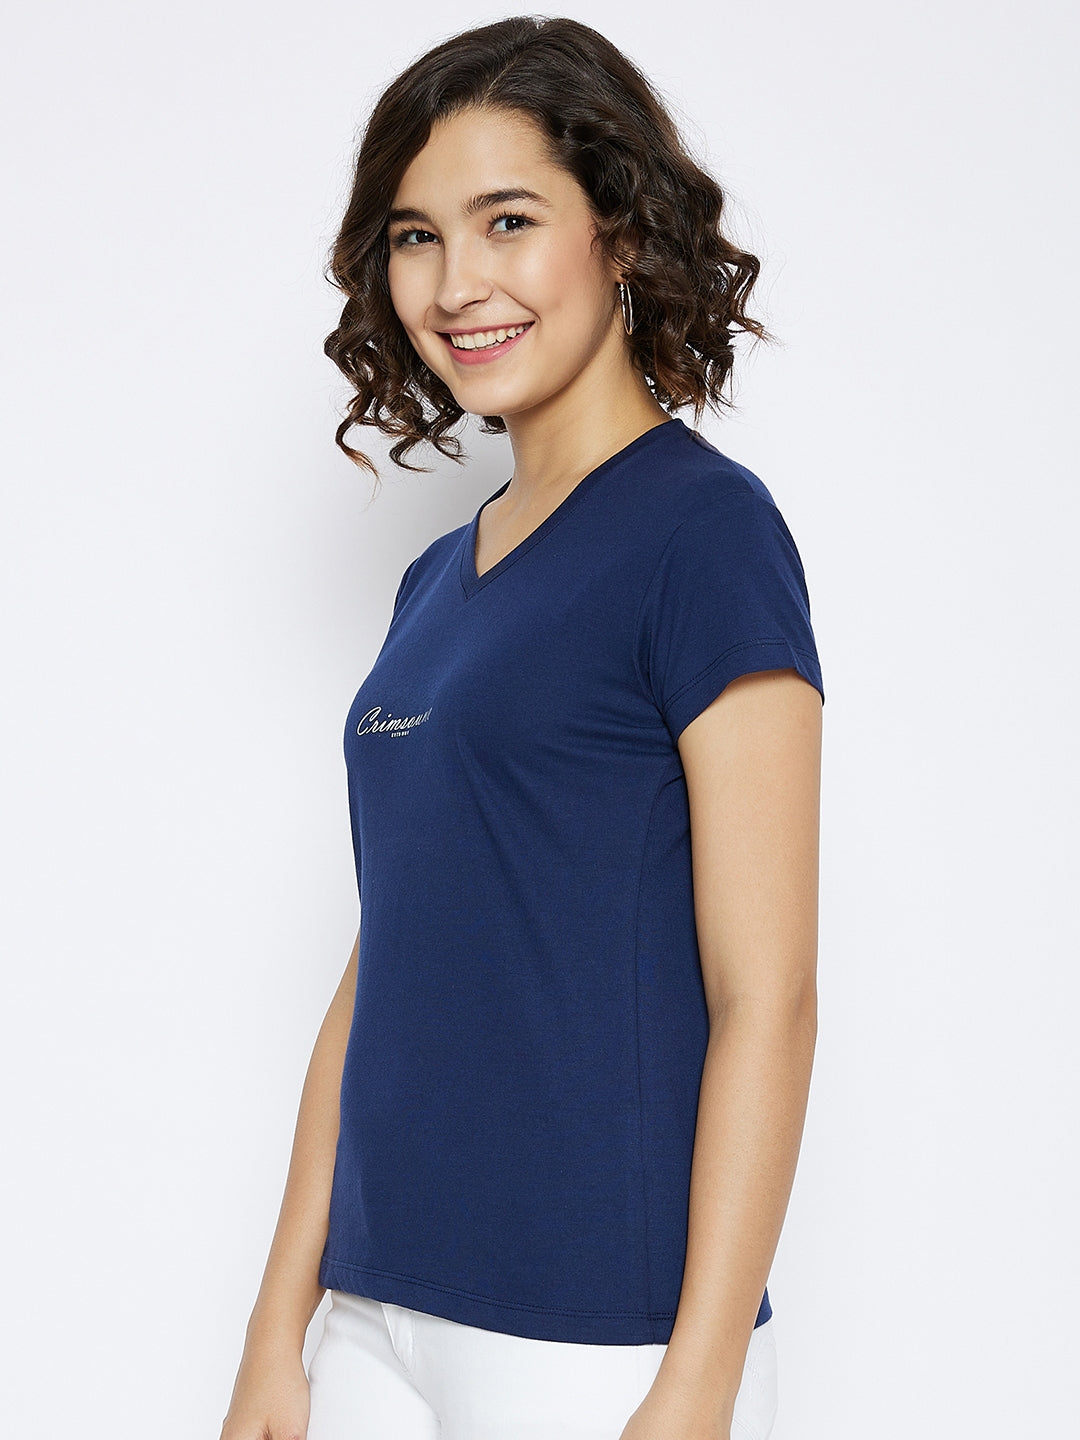 Navy Blue Printed V-Neck T-shirt - Women T-Shirts